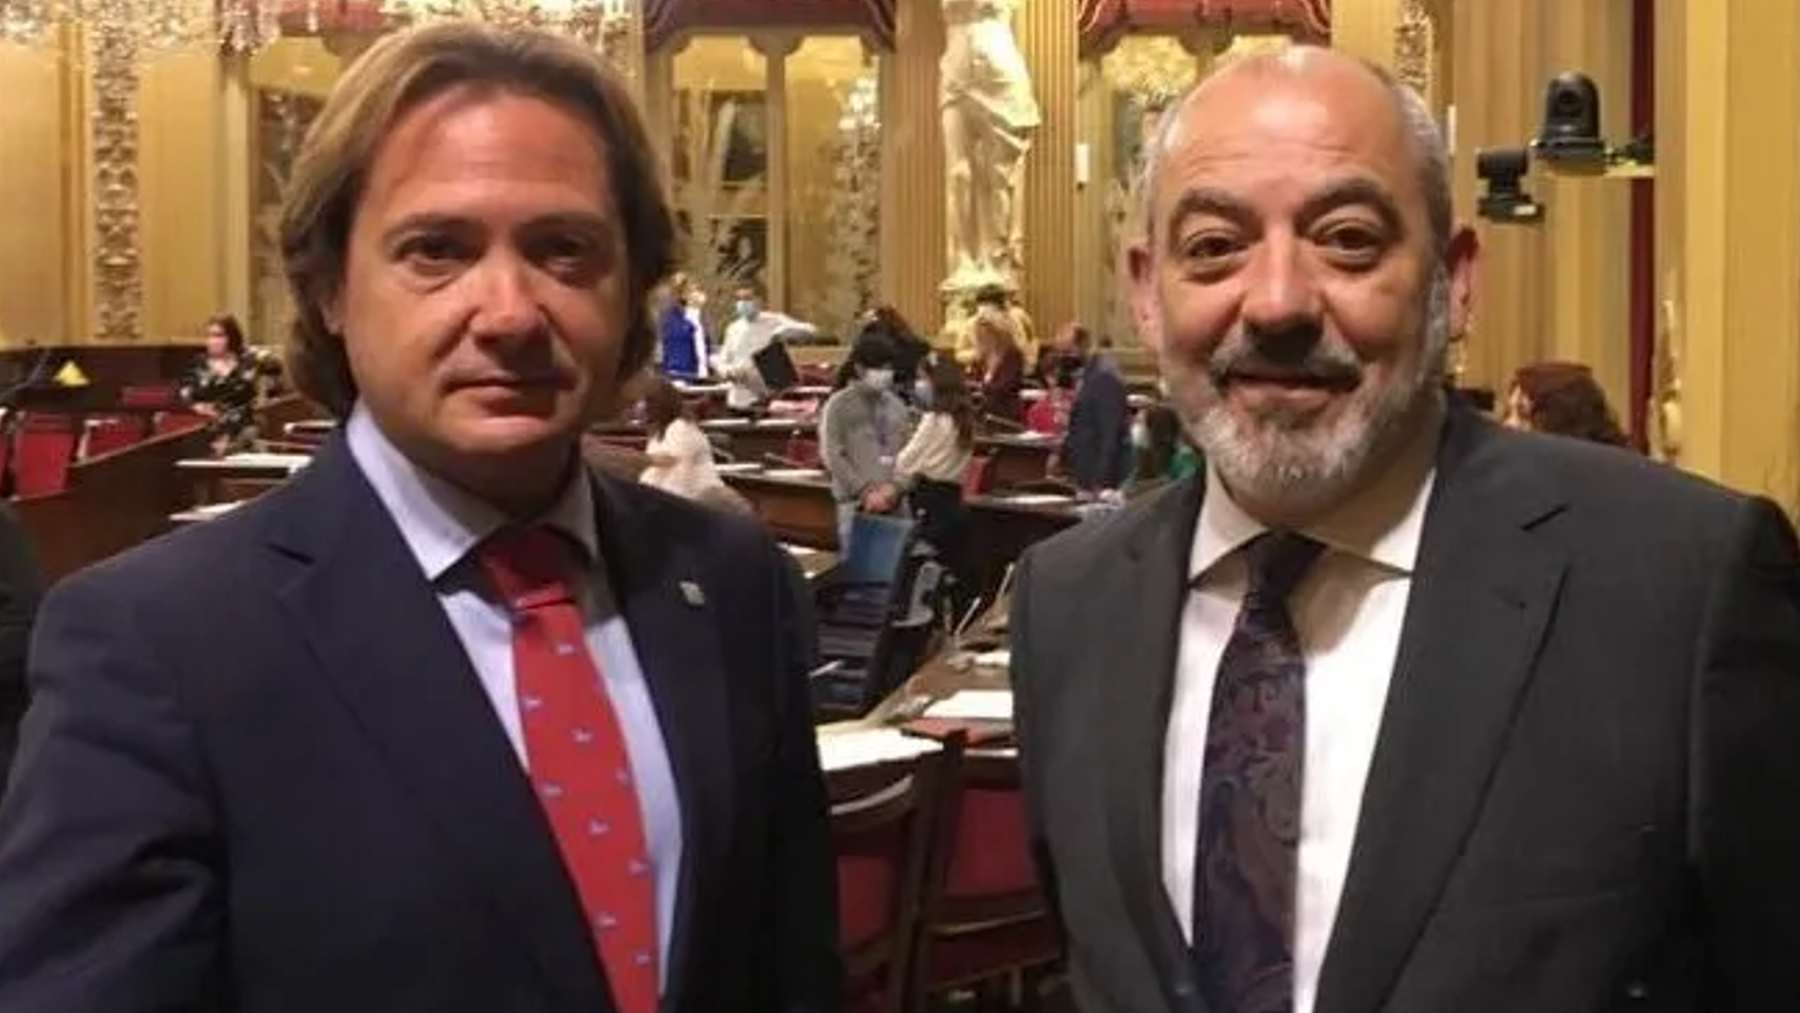 Los diputados de Vox en el Parlament balear, Jorge Campos y Sergio Rodríguez.